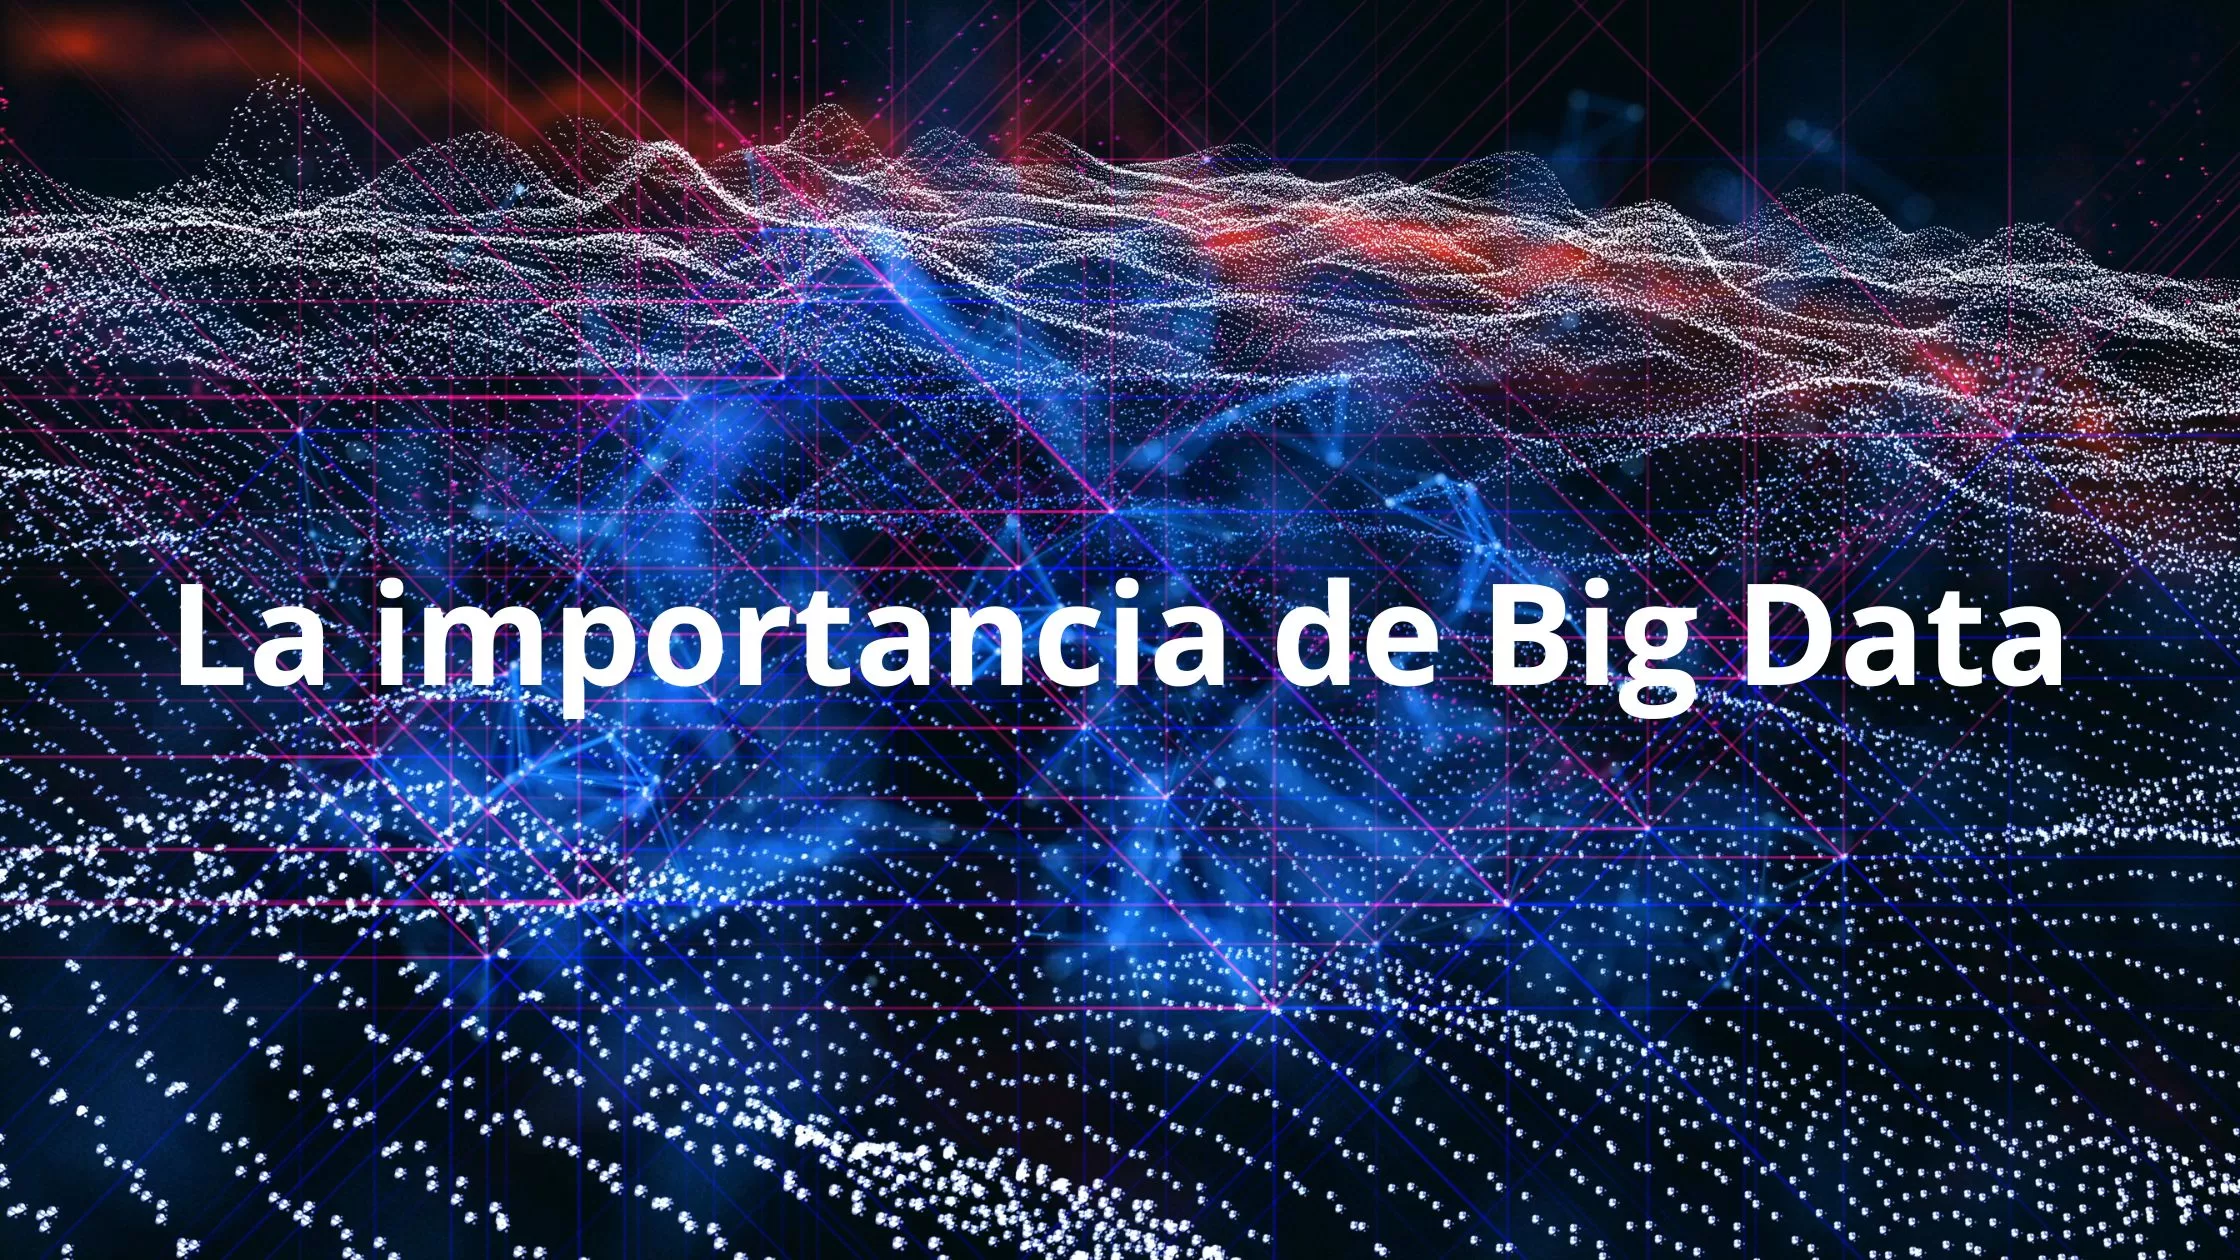 La importancia de Big Data